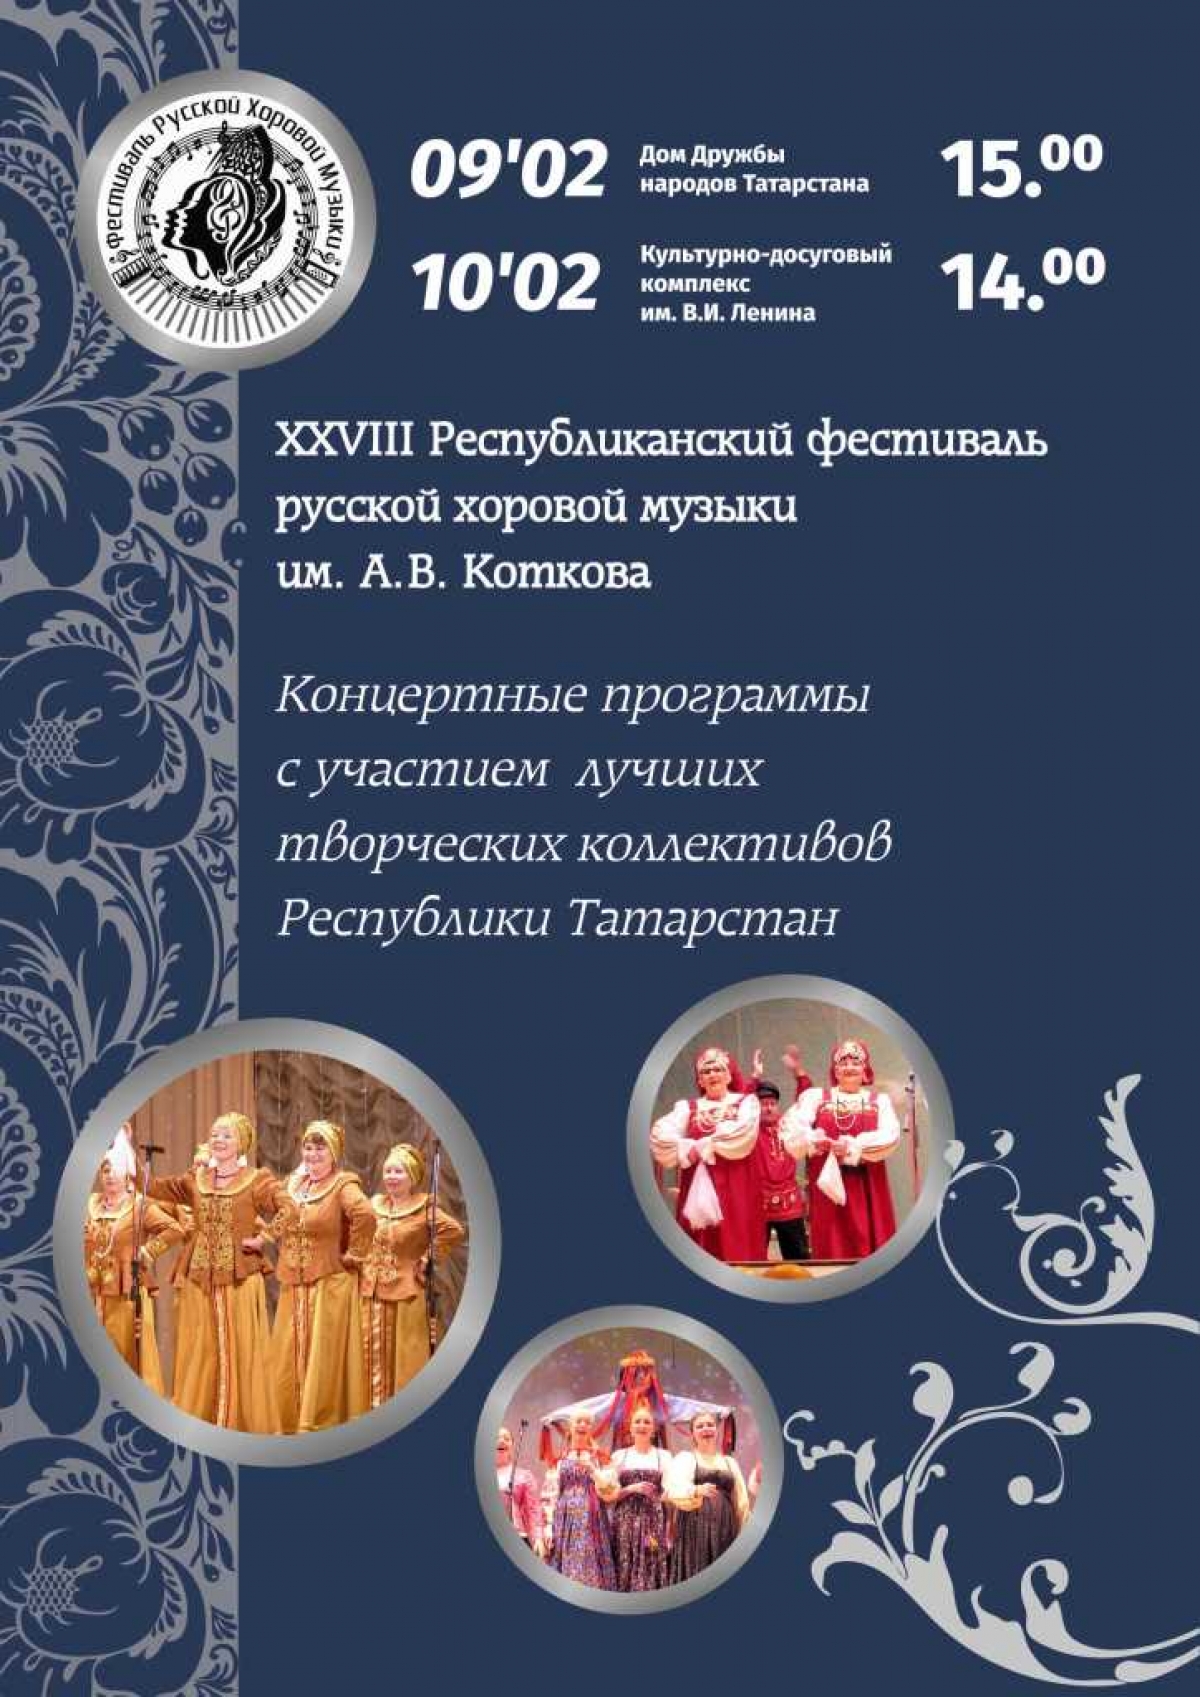 Фестиваль русской хоровой музыки имени Коткова снова пройдет в Казани